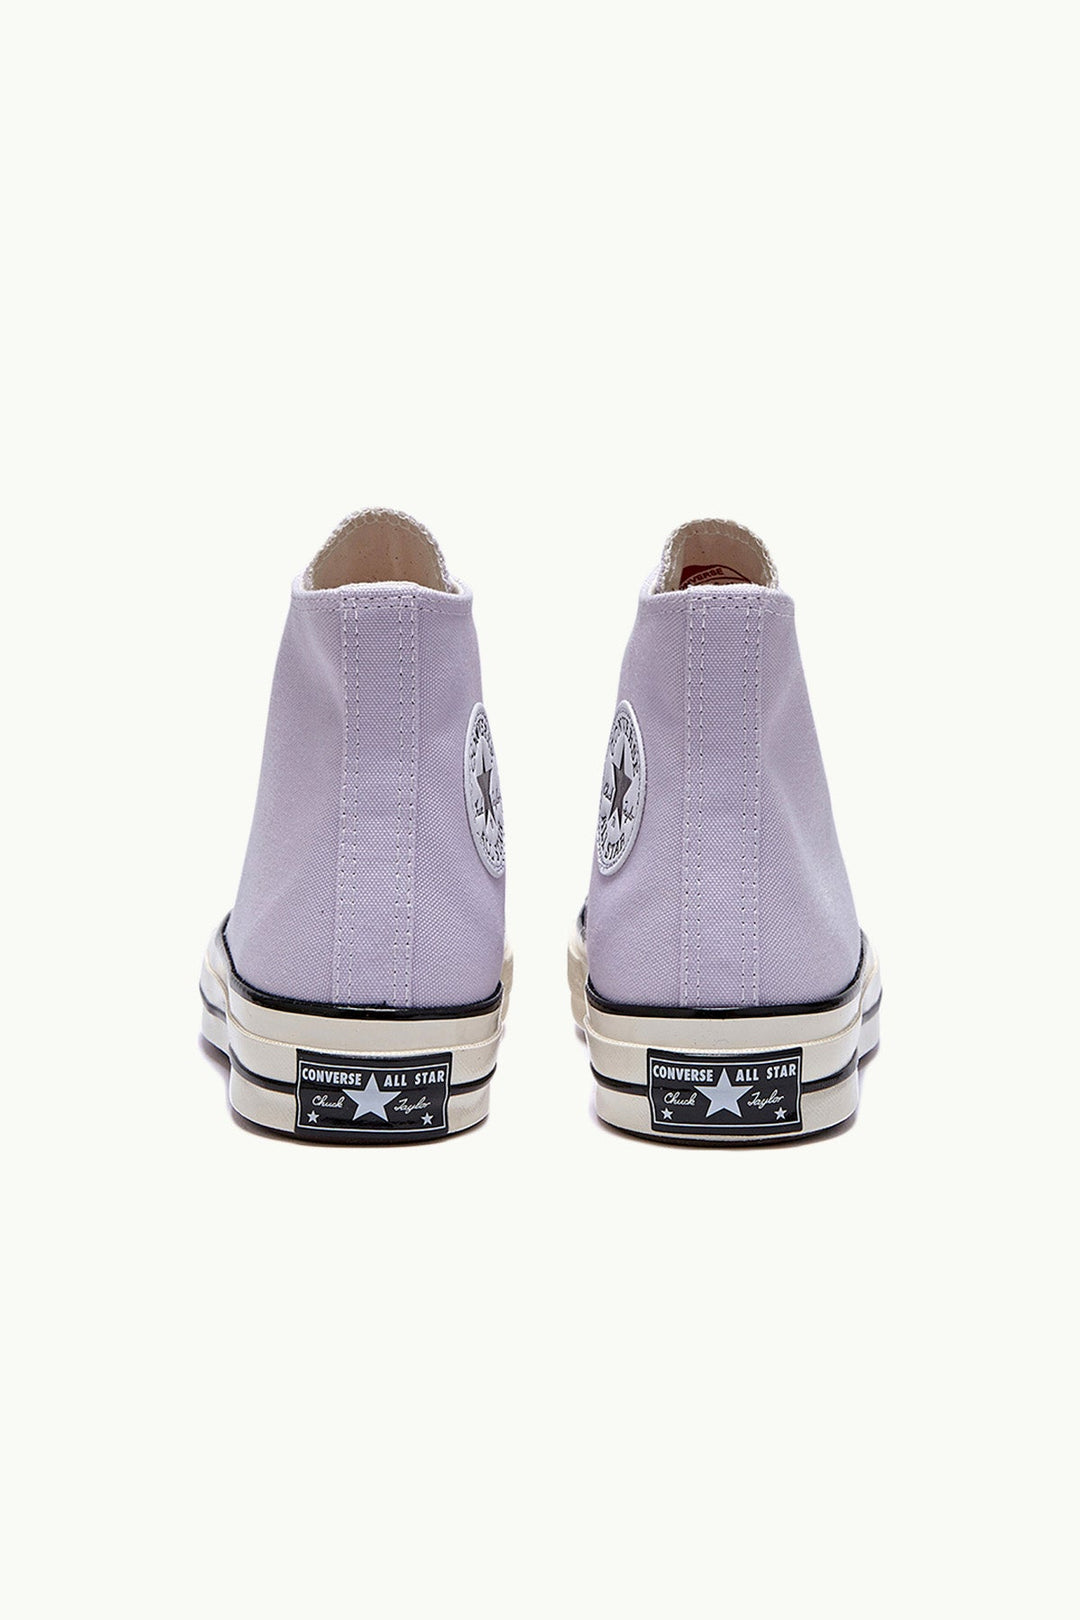 נעלי Chuck 70 בצבע לילך - Converse